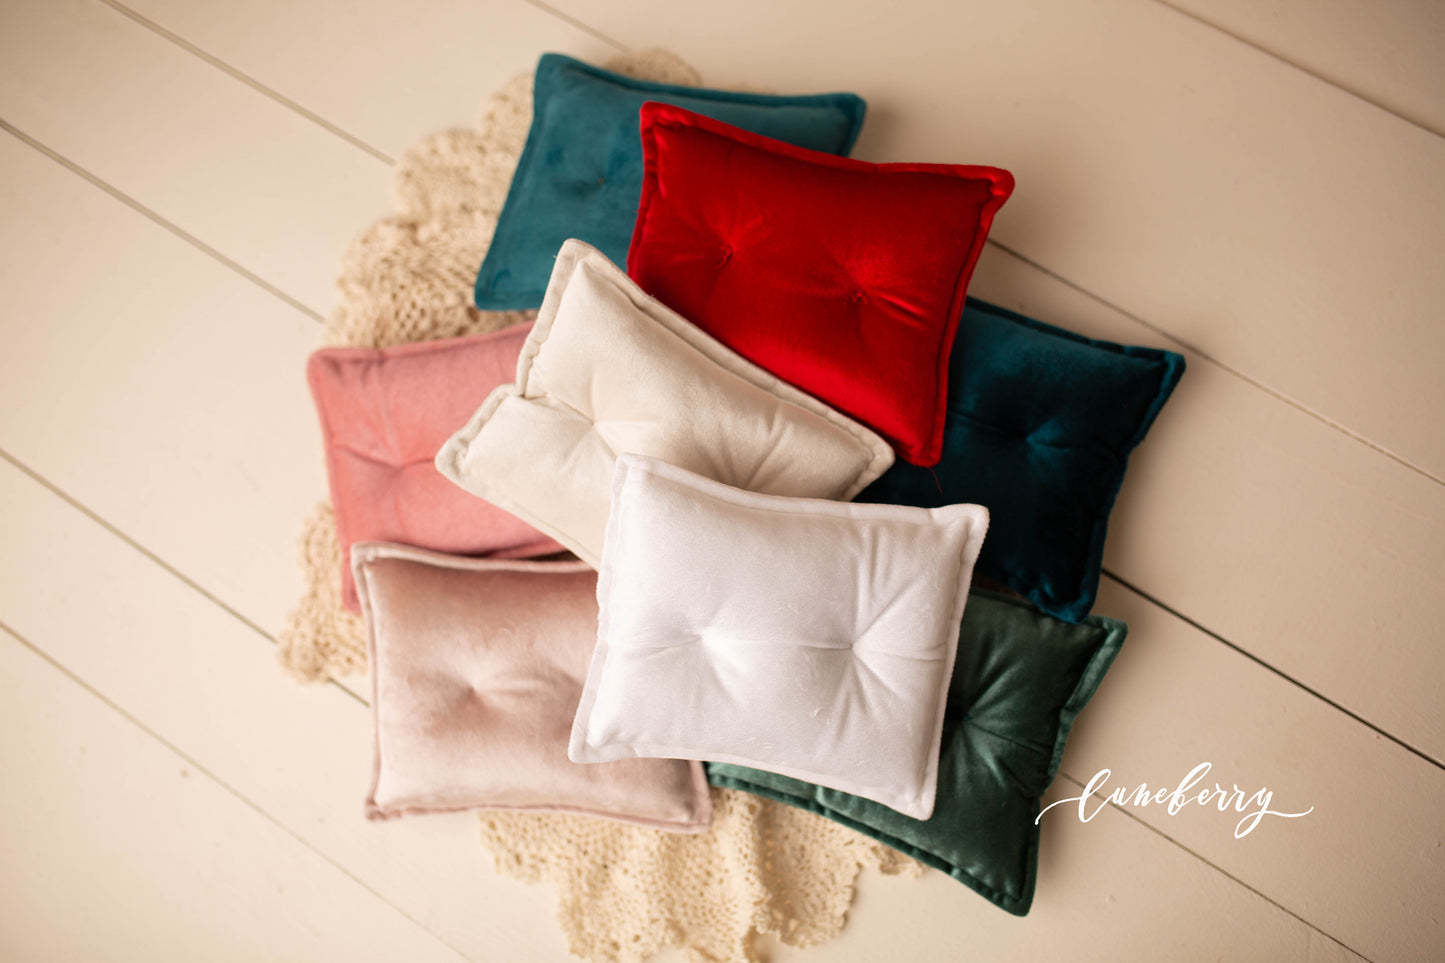 Velvet Pillows